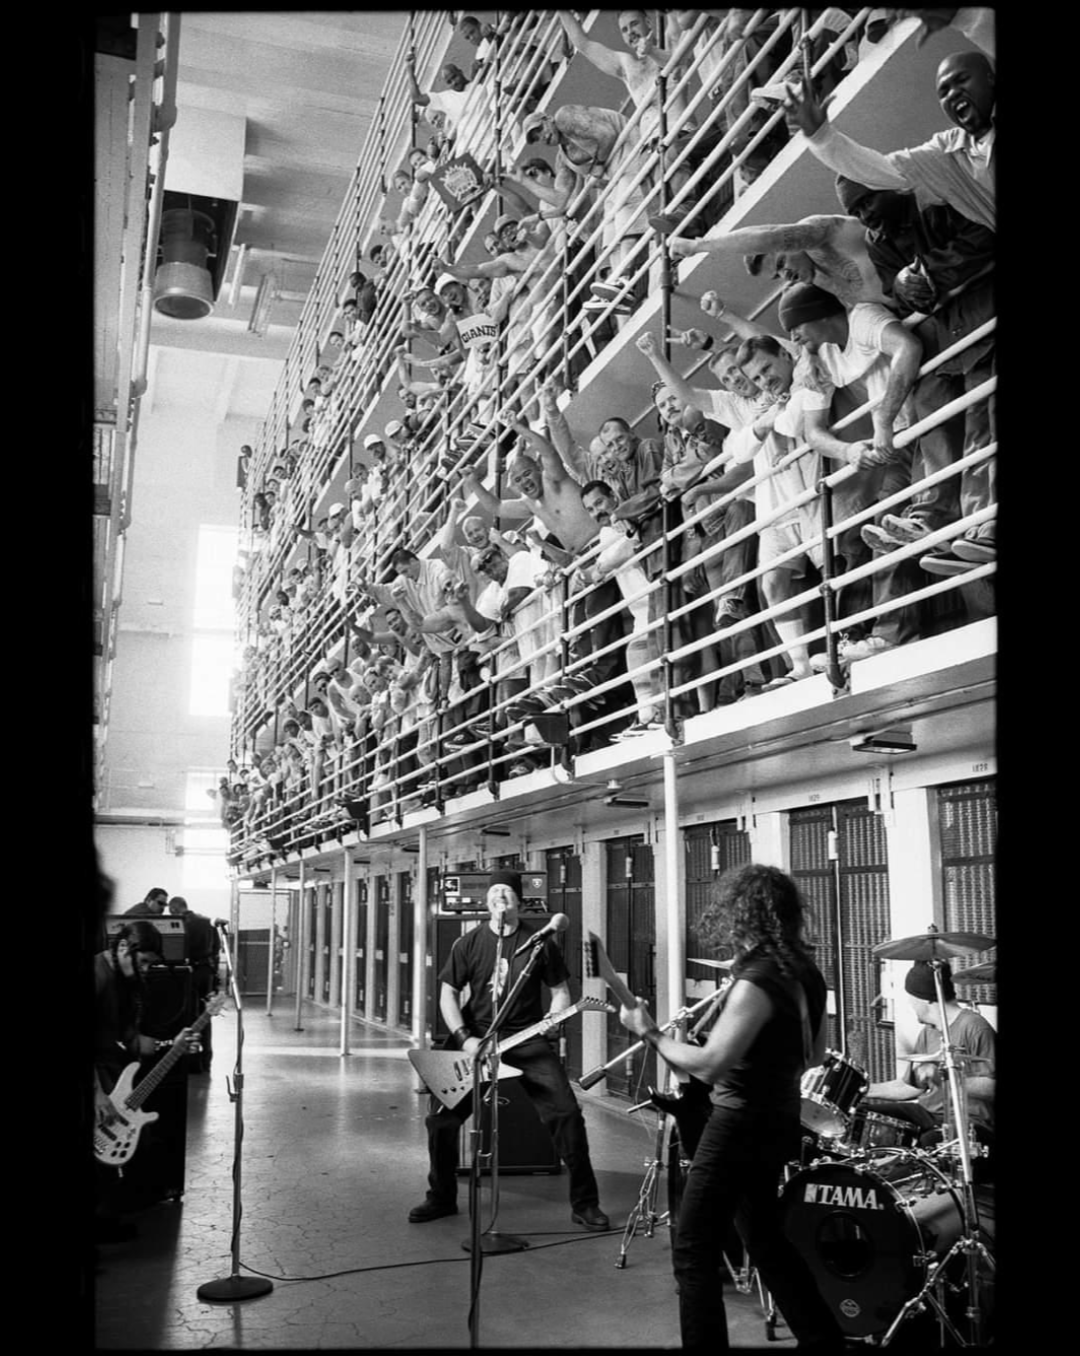 metallica performing in prison - Tama